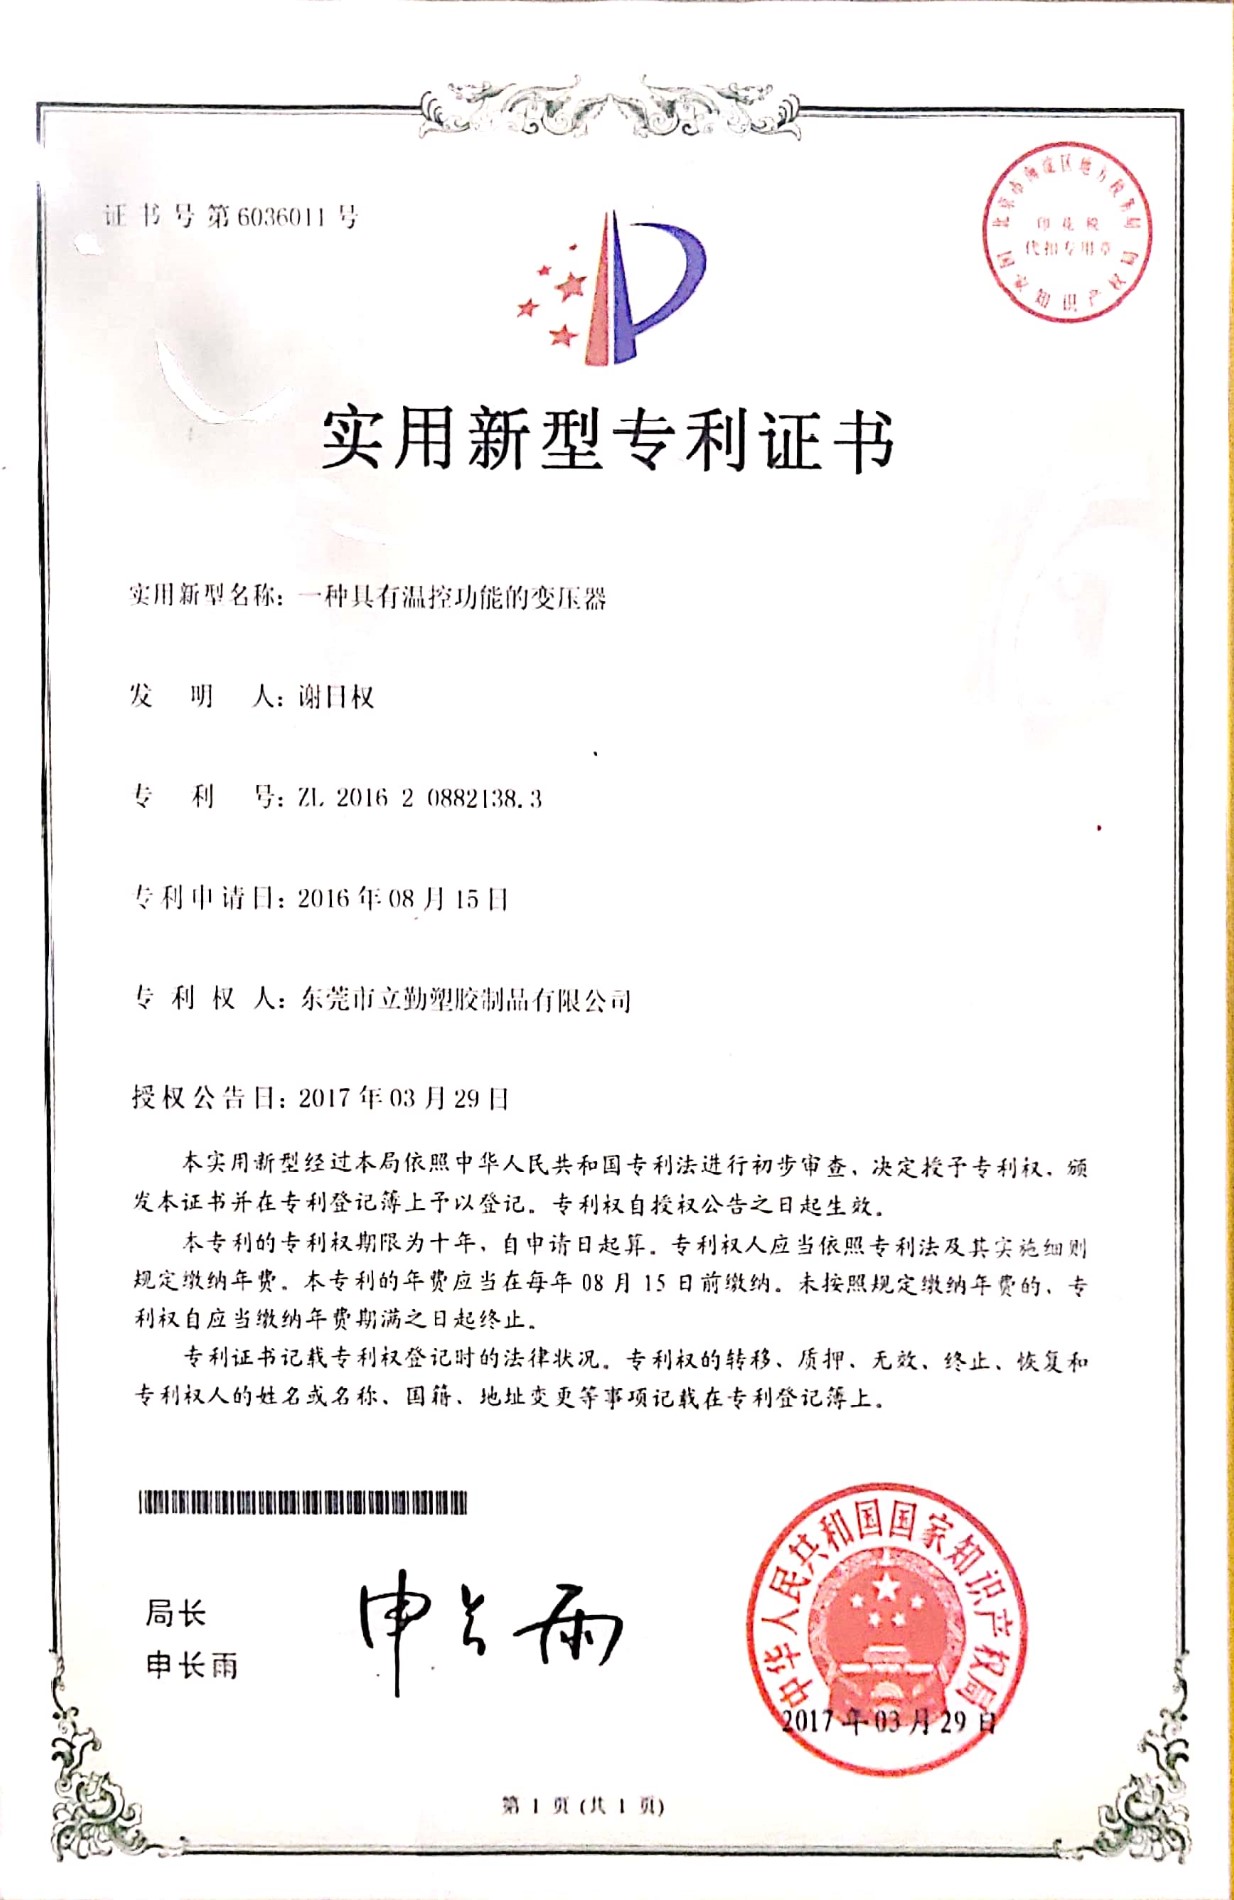 Certificat de brevet de modèle d'utilité - fonction de contrôle de la température